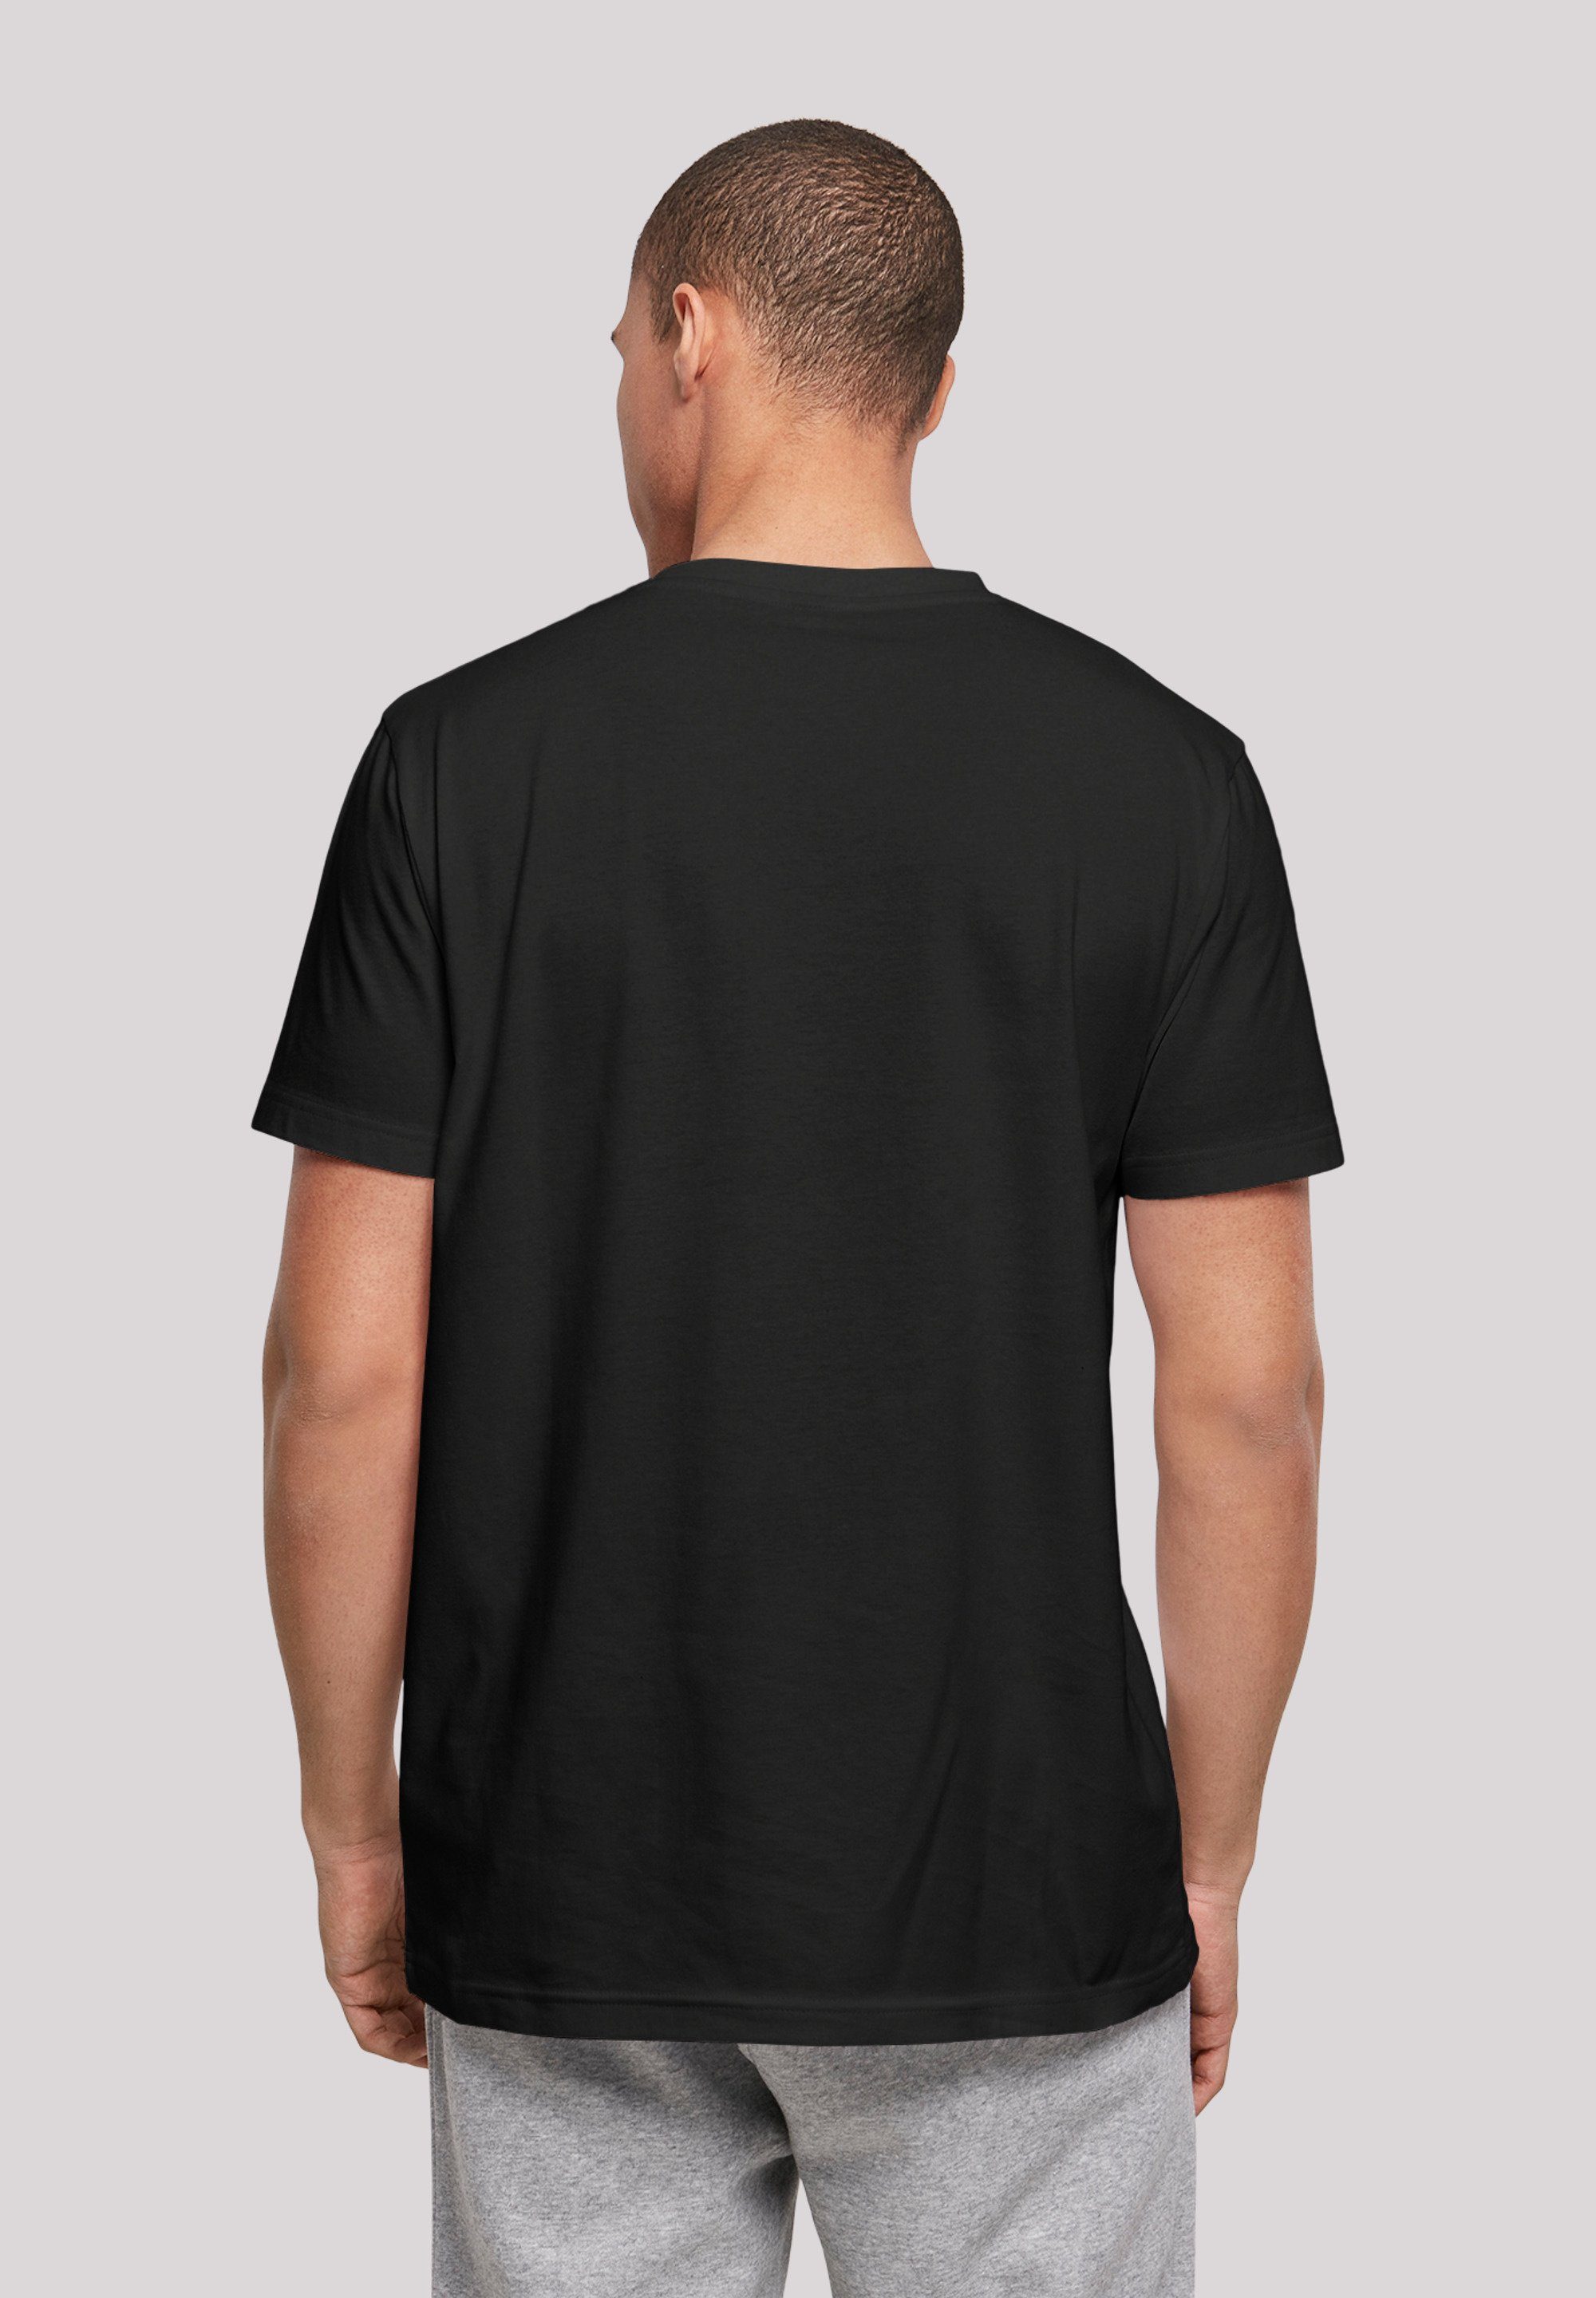 Spieler Print schwarz Basketball F4NT4STIC T-Shirt